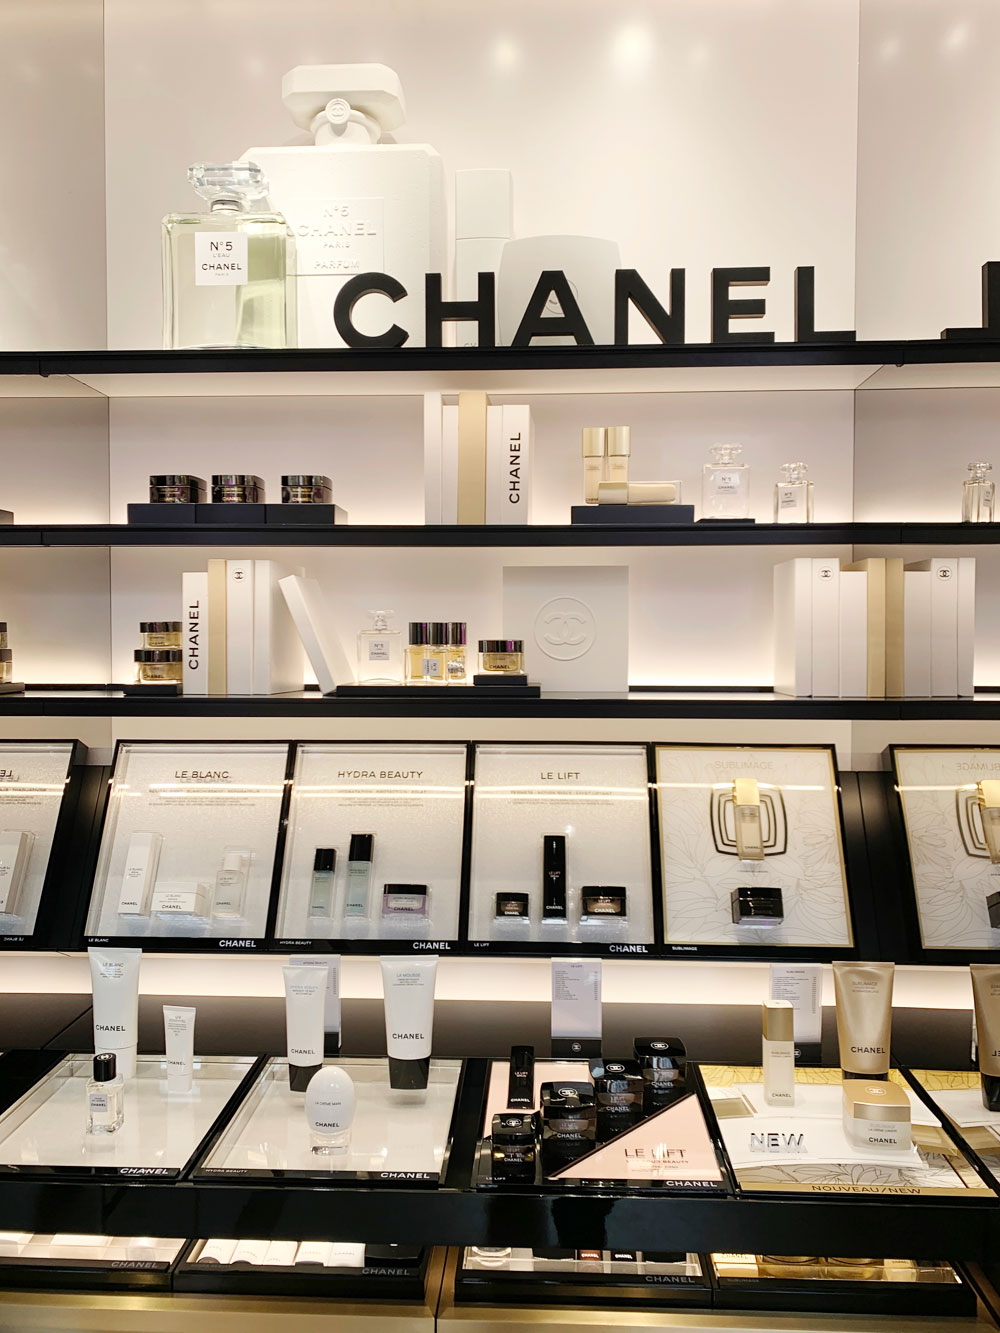 sonrisa war mit Chanel in Paris und hat viele Fotos von dieser unvergesslichen Presse-Reise mitgebracht. 